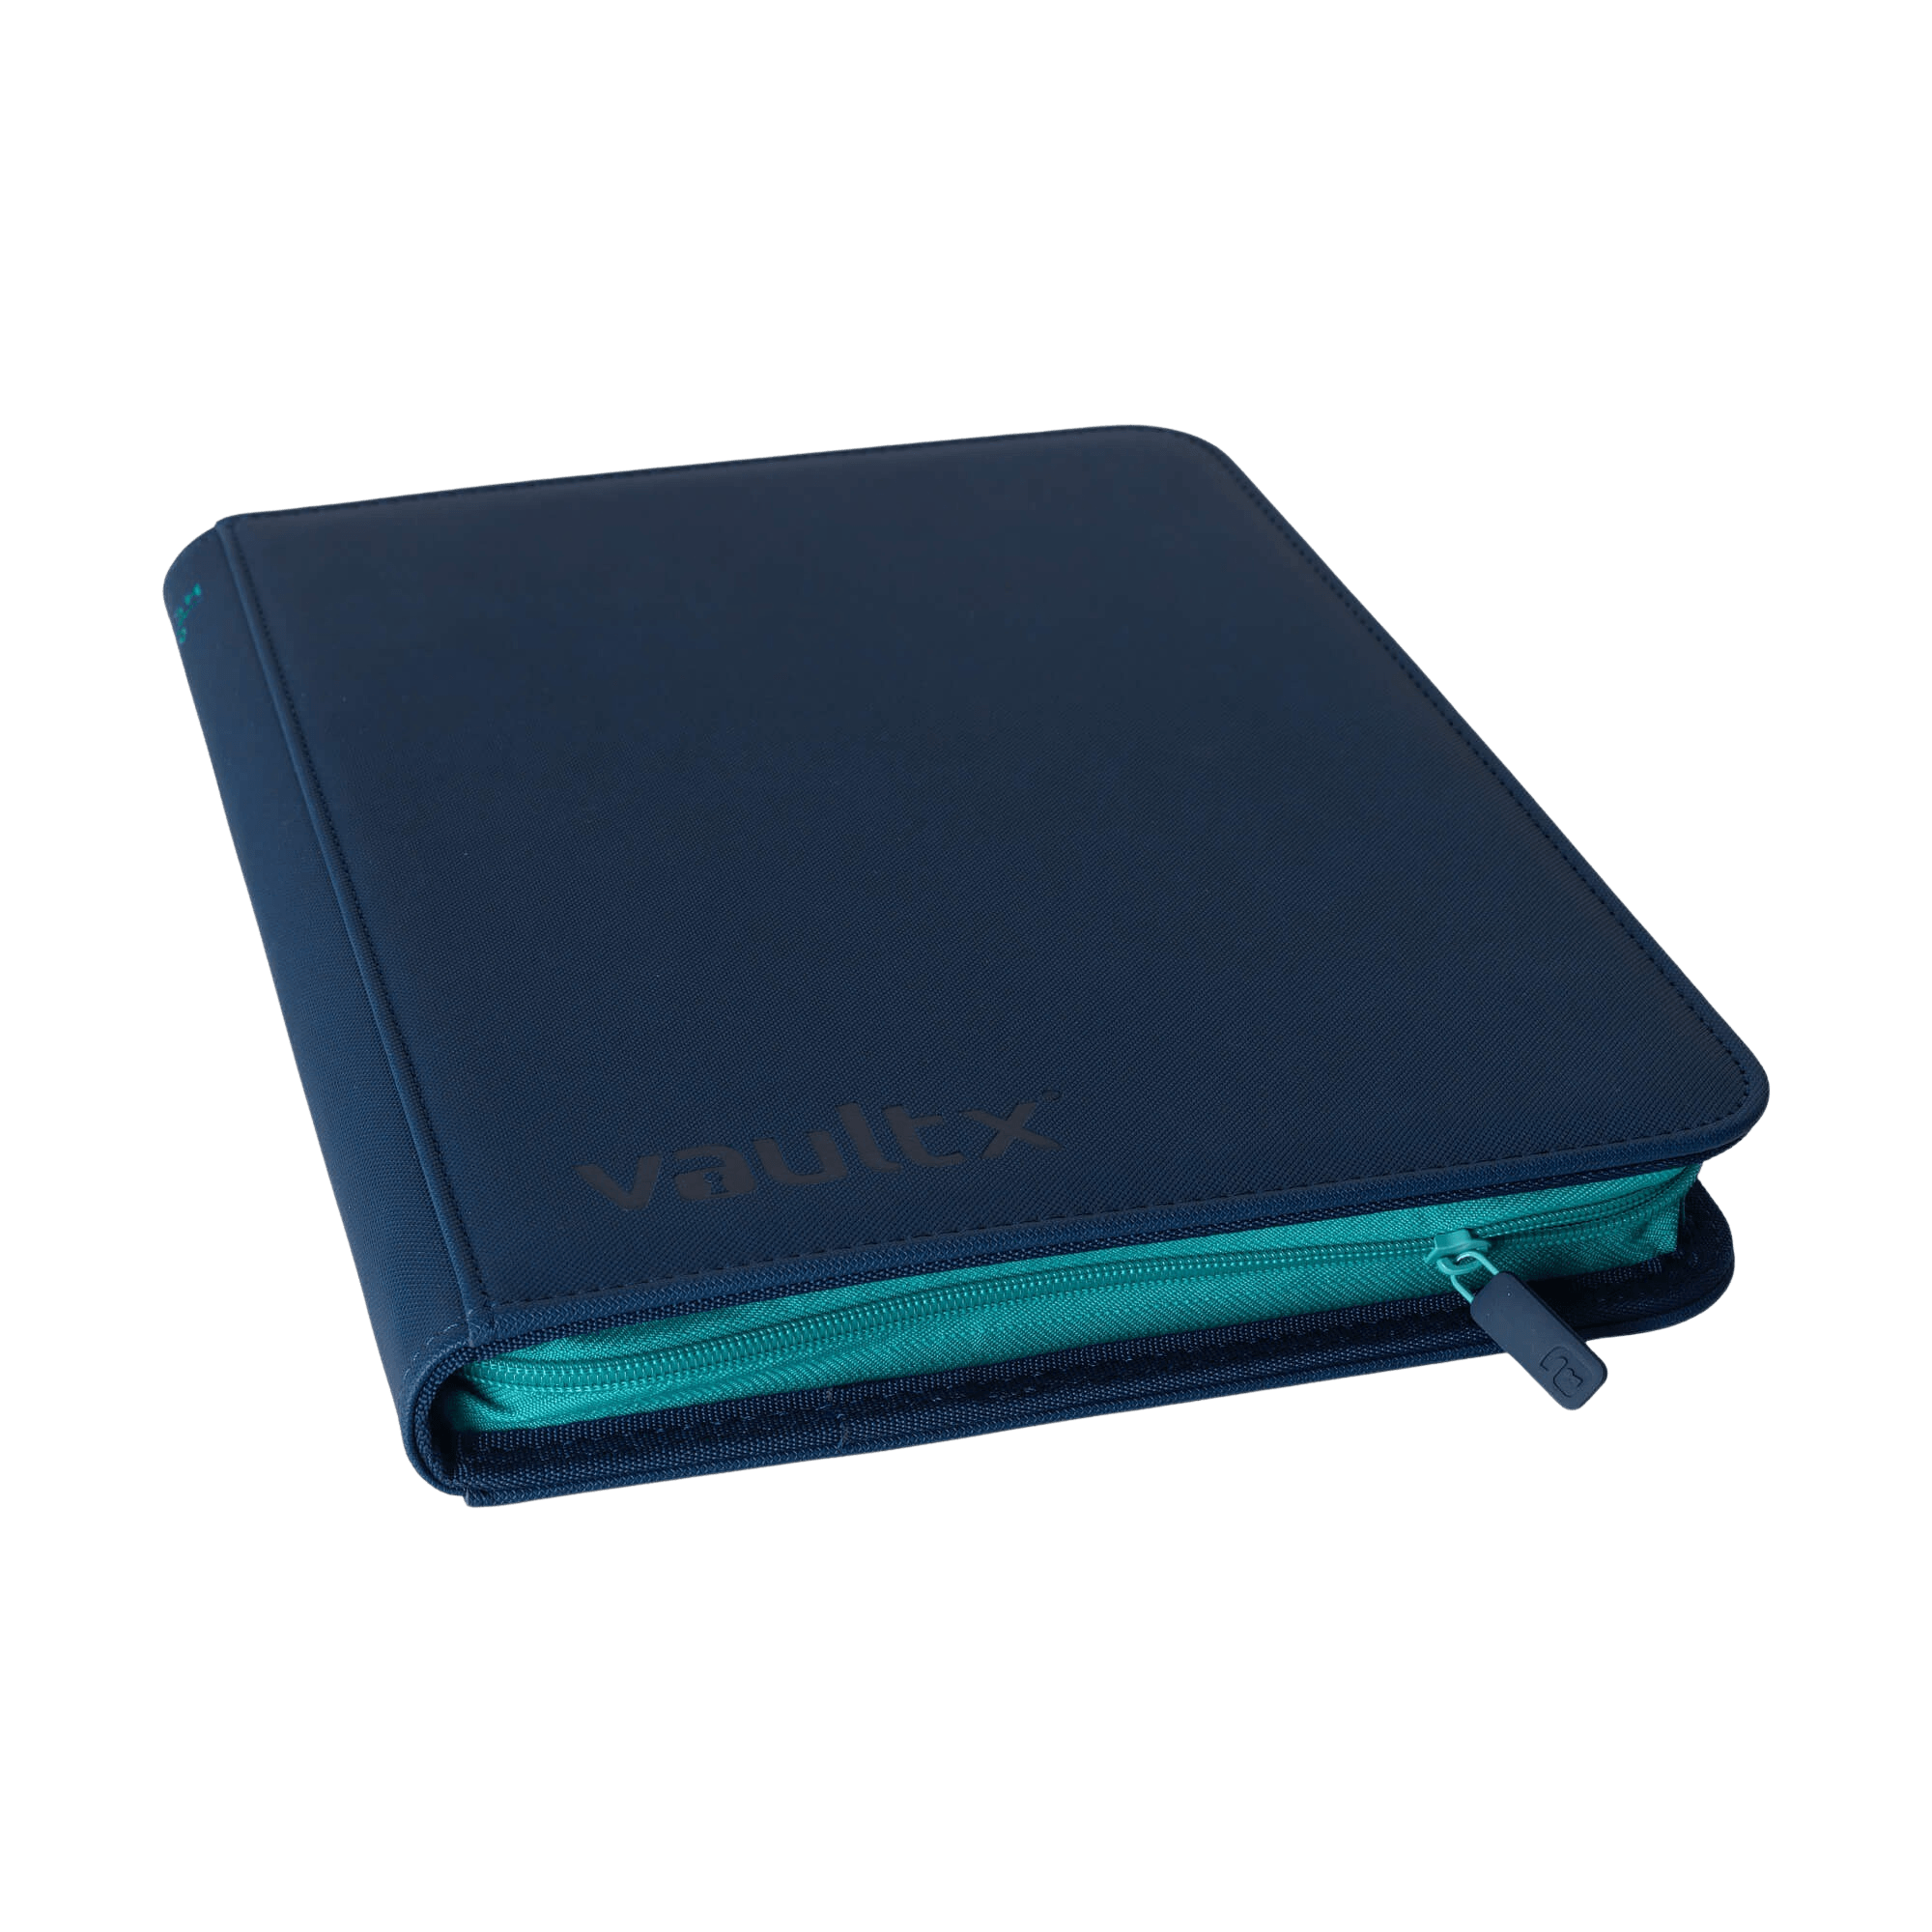 Vault X 9-Pocket Exo-Tec® Zip Binder - SWSH10 - Blue - The Card Vault